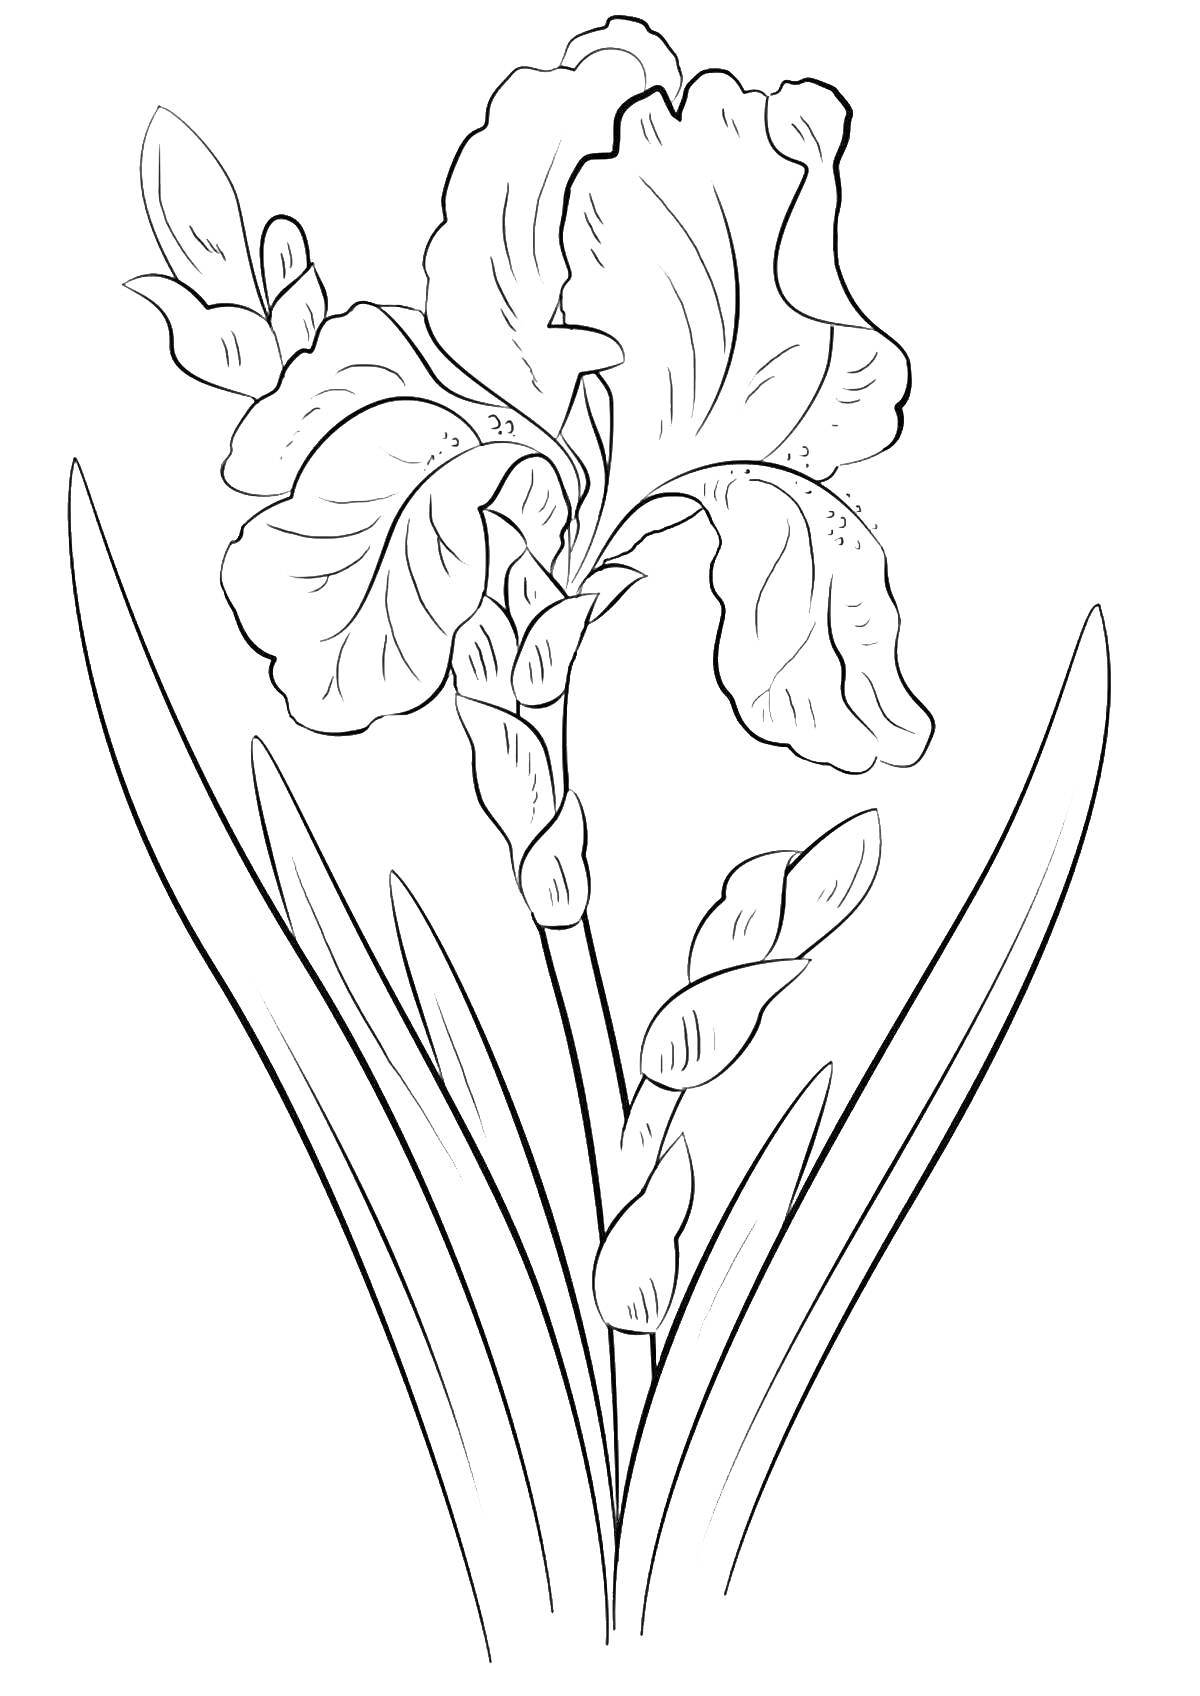 Раскраска Раскраска с изображением цветка ириса с листьями и бутонами